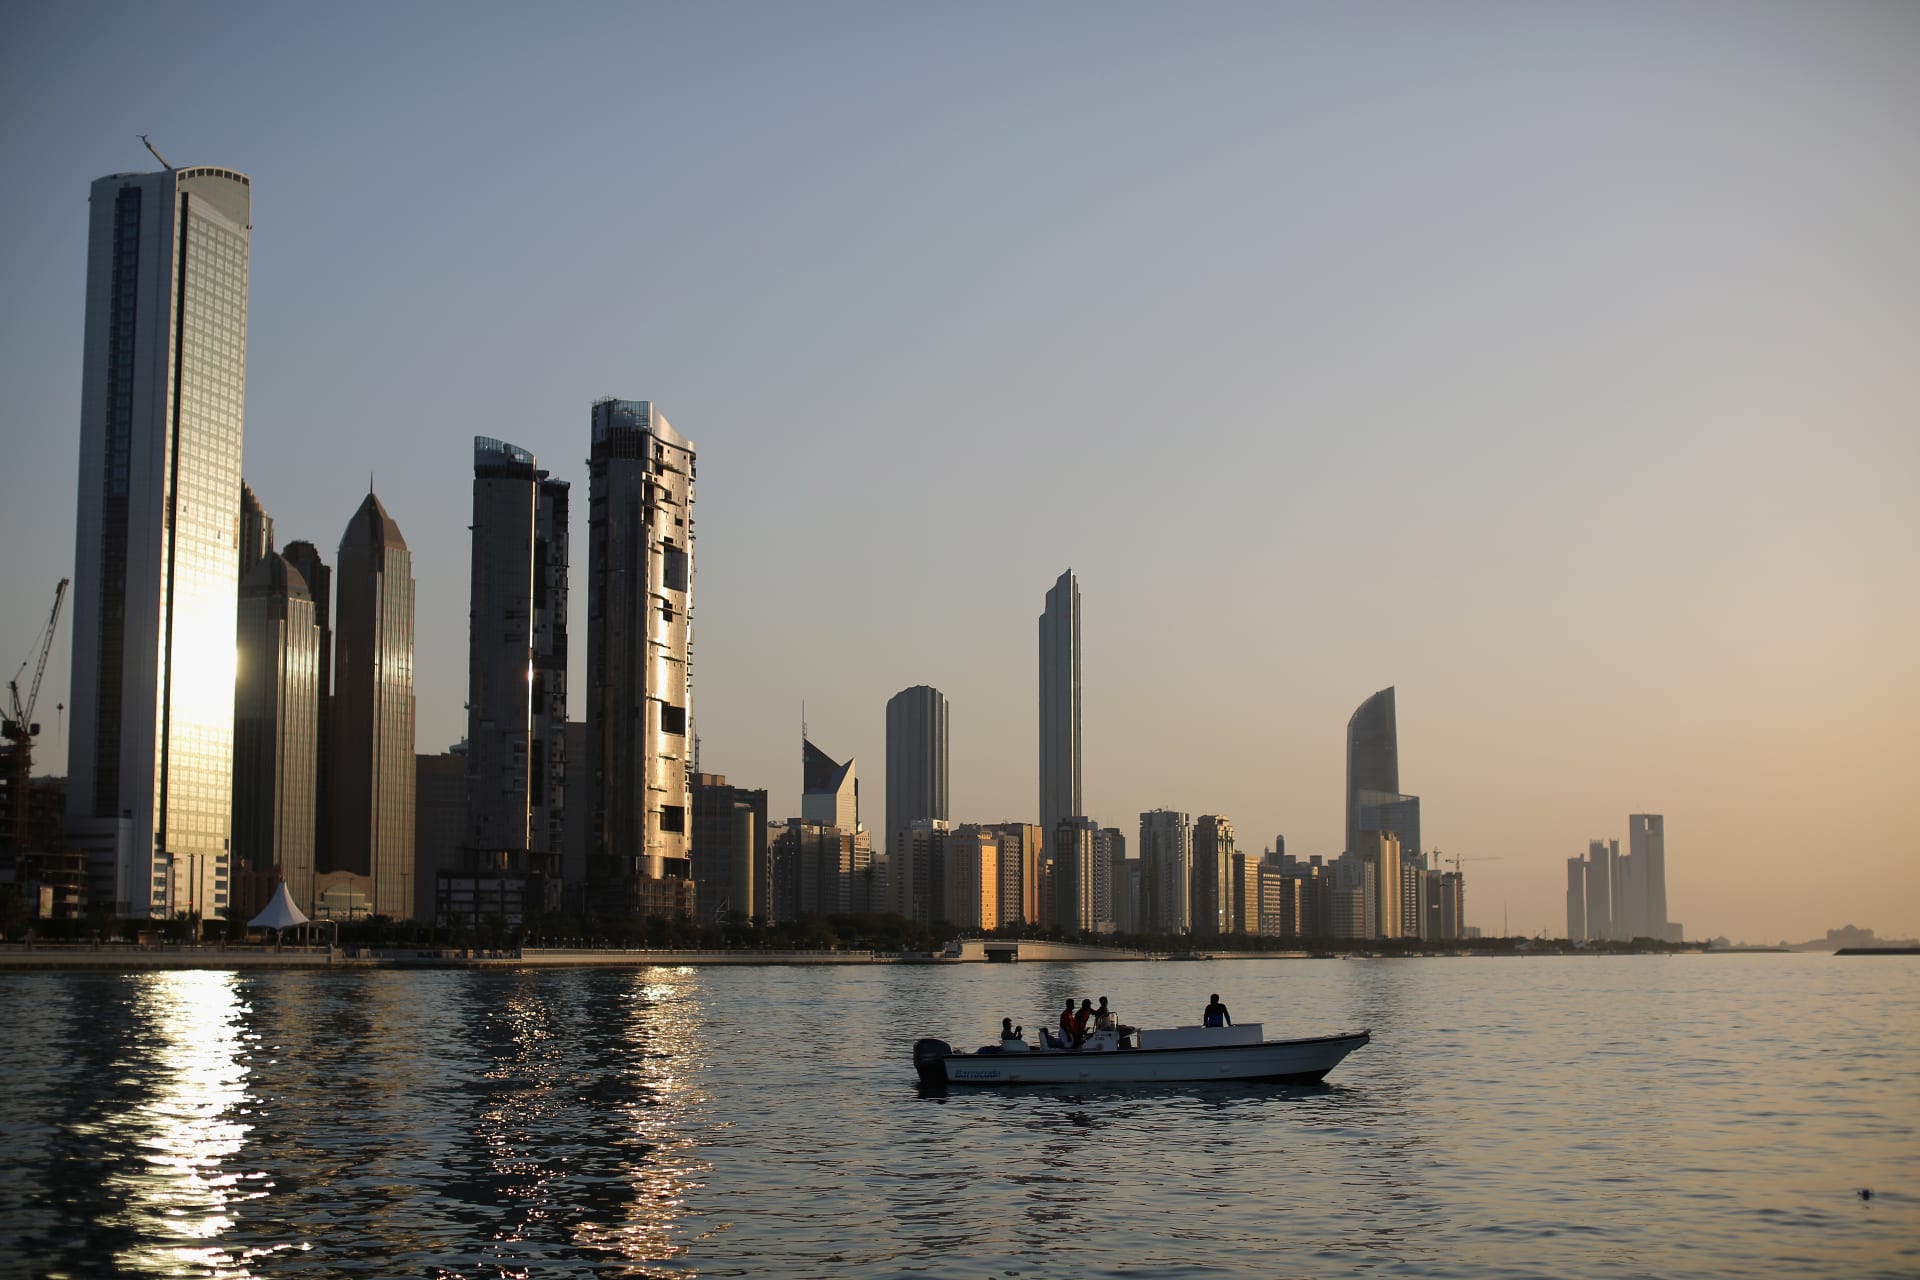 الإمارات تسجل أعلى درجة حرارة هذا العام بلغت 50.8 درجة مئوية